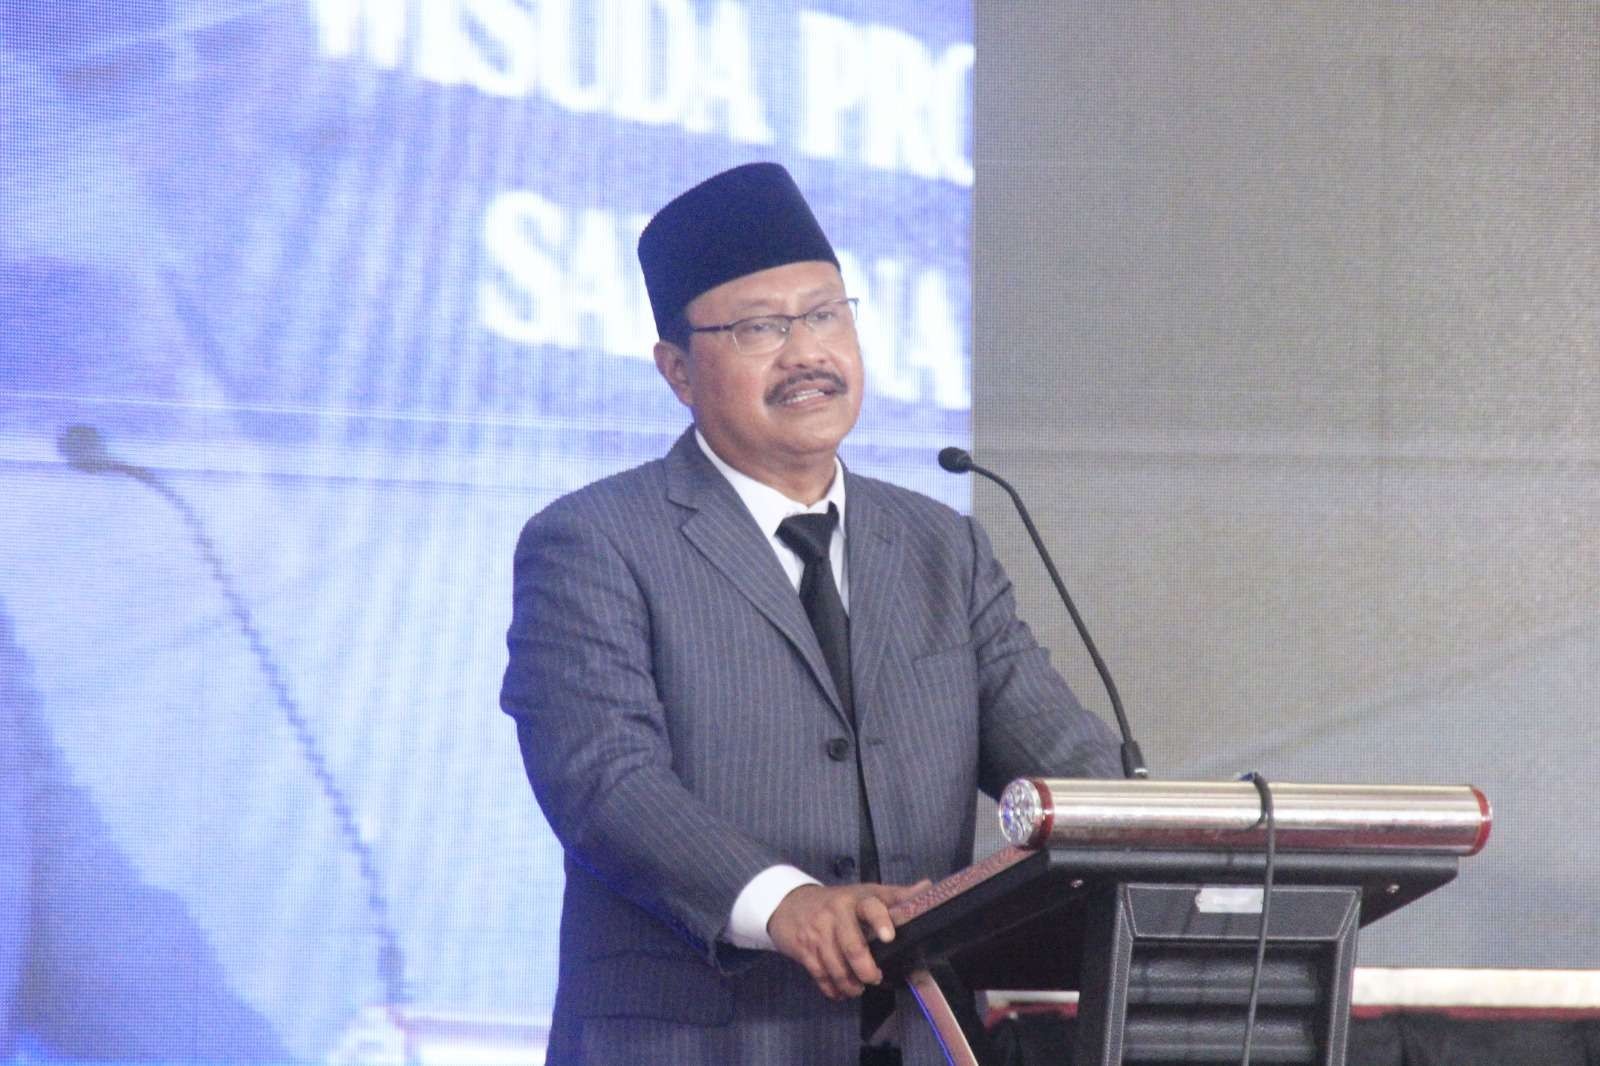 Walikota Pasuruan Saifullah Yusuf (Gus Ipul) menghadiri Sidang Terbuka Senat Universitas PGRI Wiranegara (Uniwara) dan STIT PGRI Kota Pasuruan, Sabtu 18 Februari 2023. (Foto: Dok. Pemkot Pasuruan)